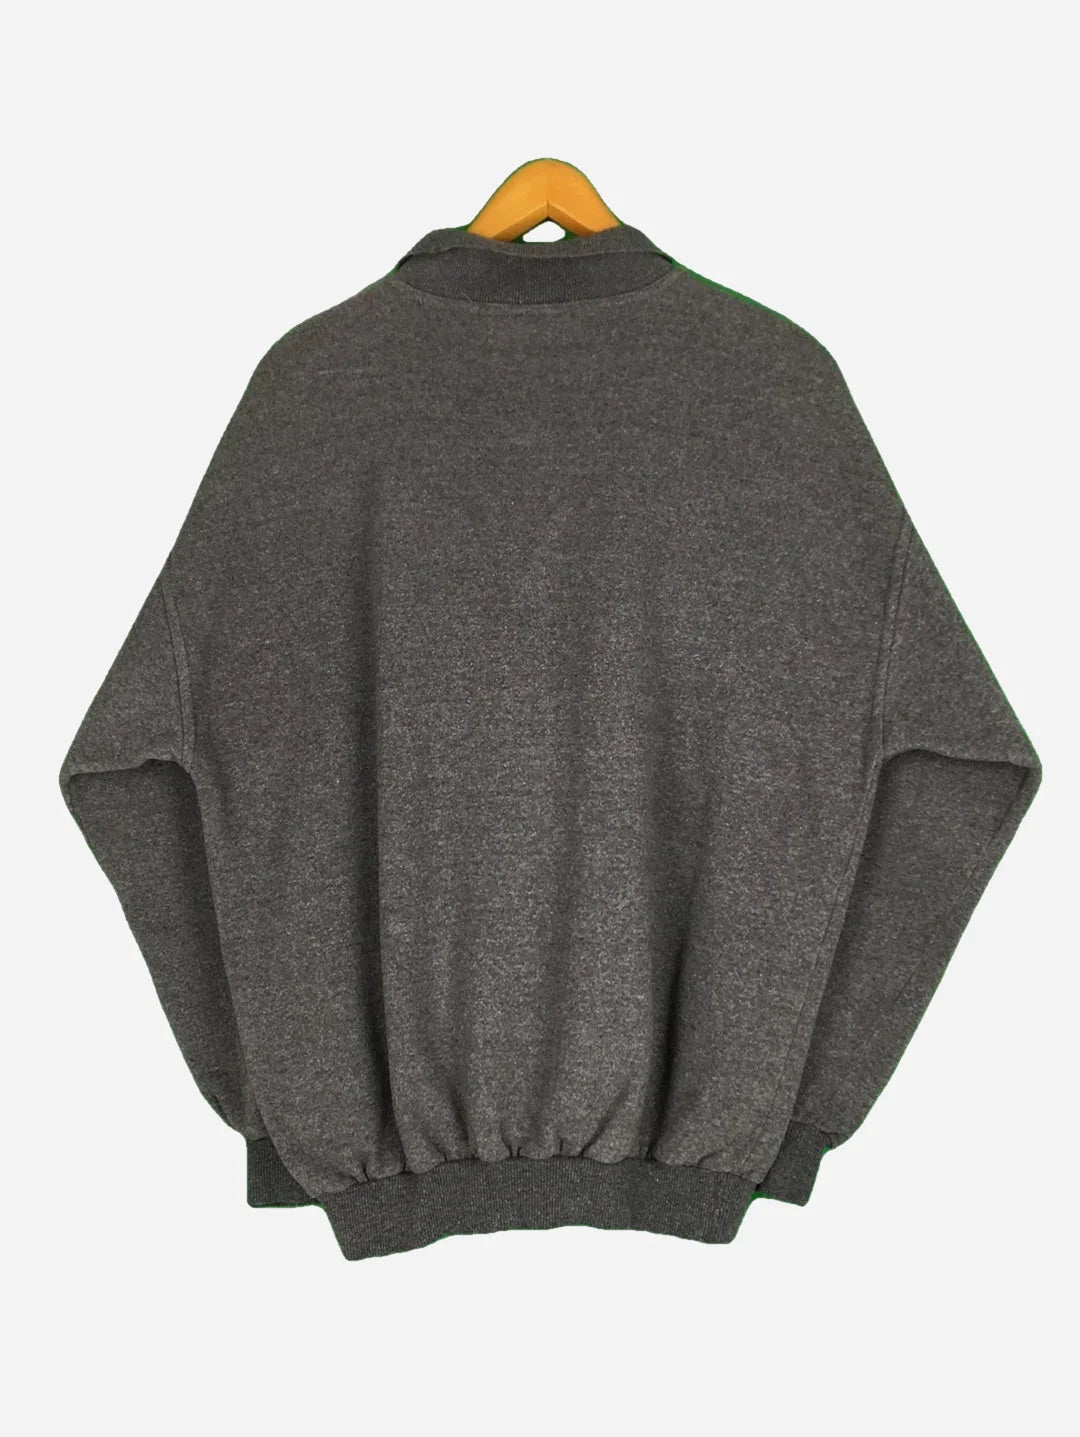 Monte Carlo Sweater (L)